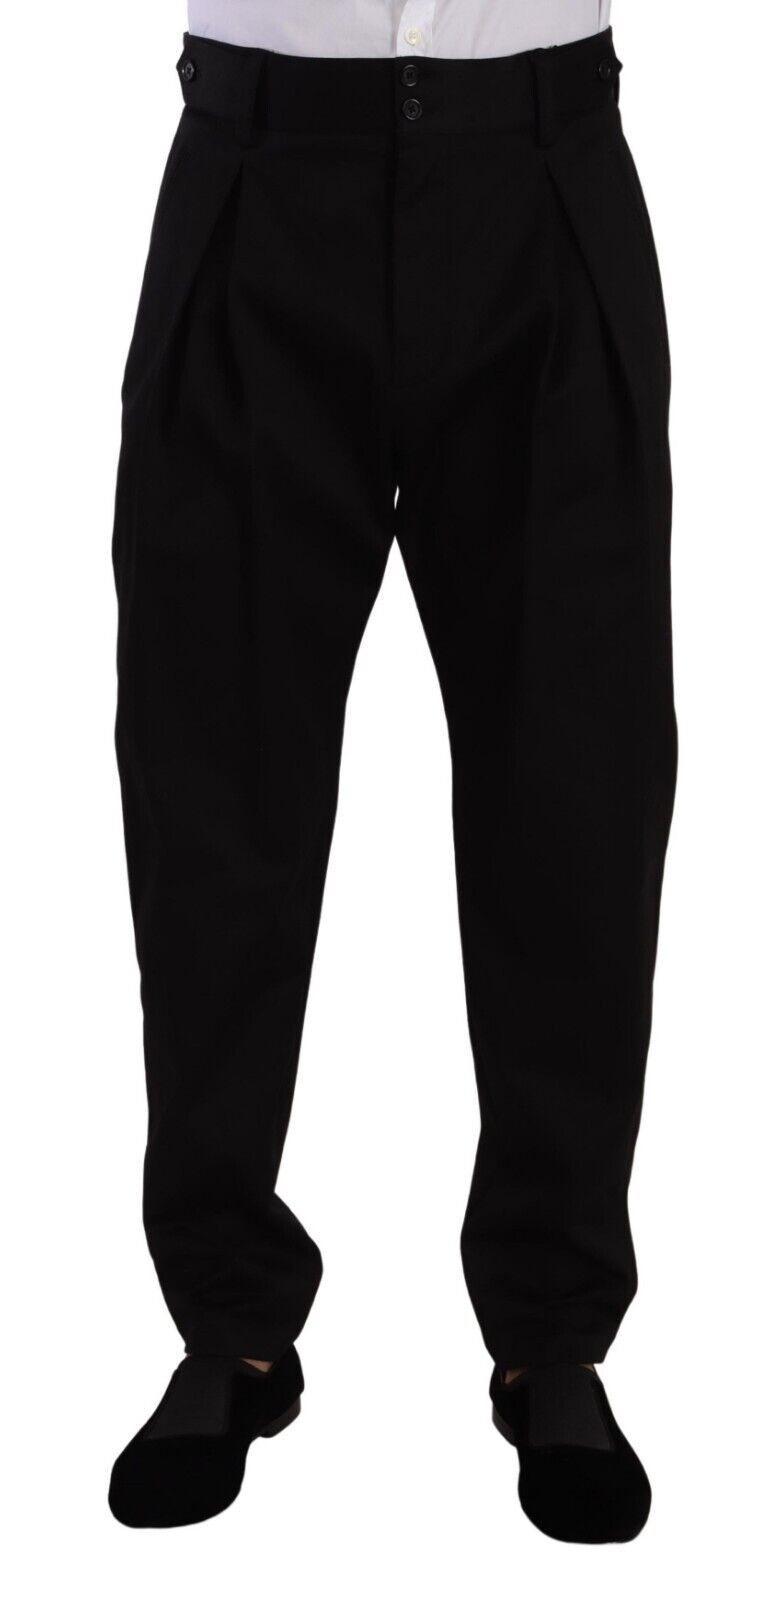 Dolce & Gabbana Black Cotton High Waist Men Trouser Dress Pants